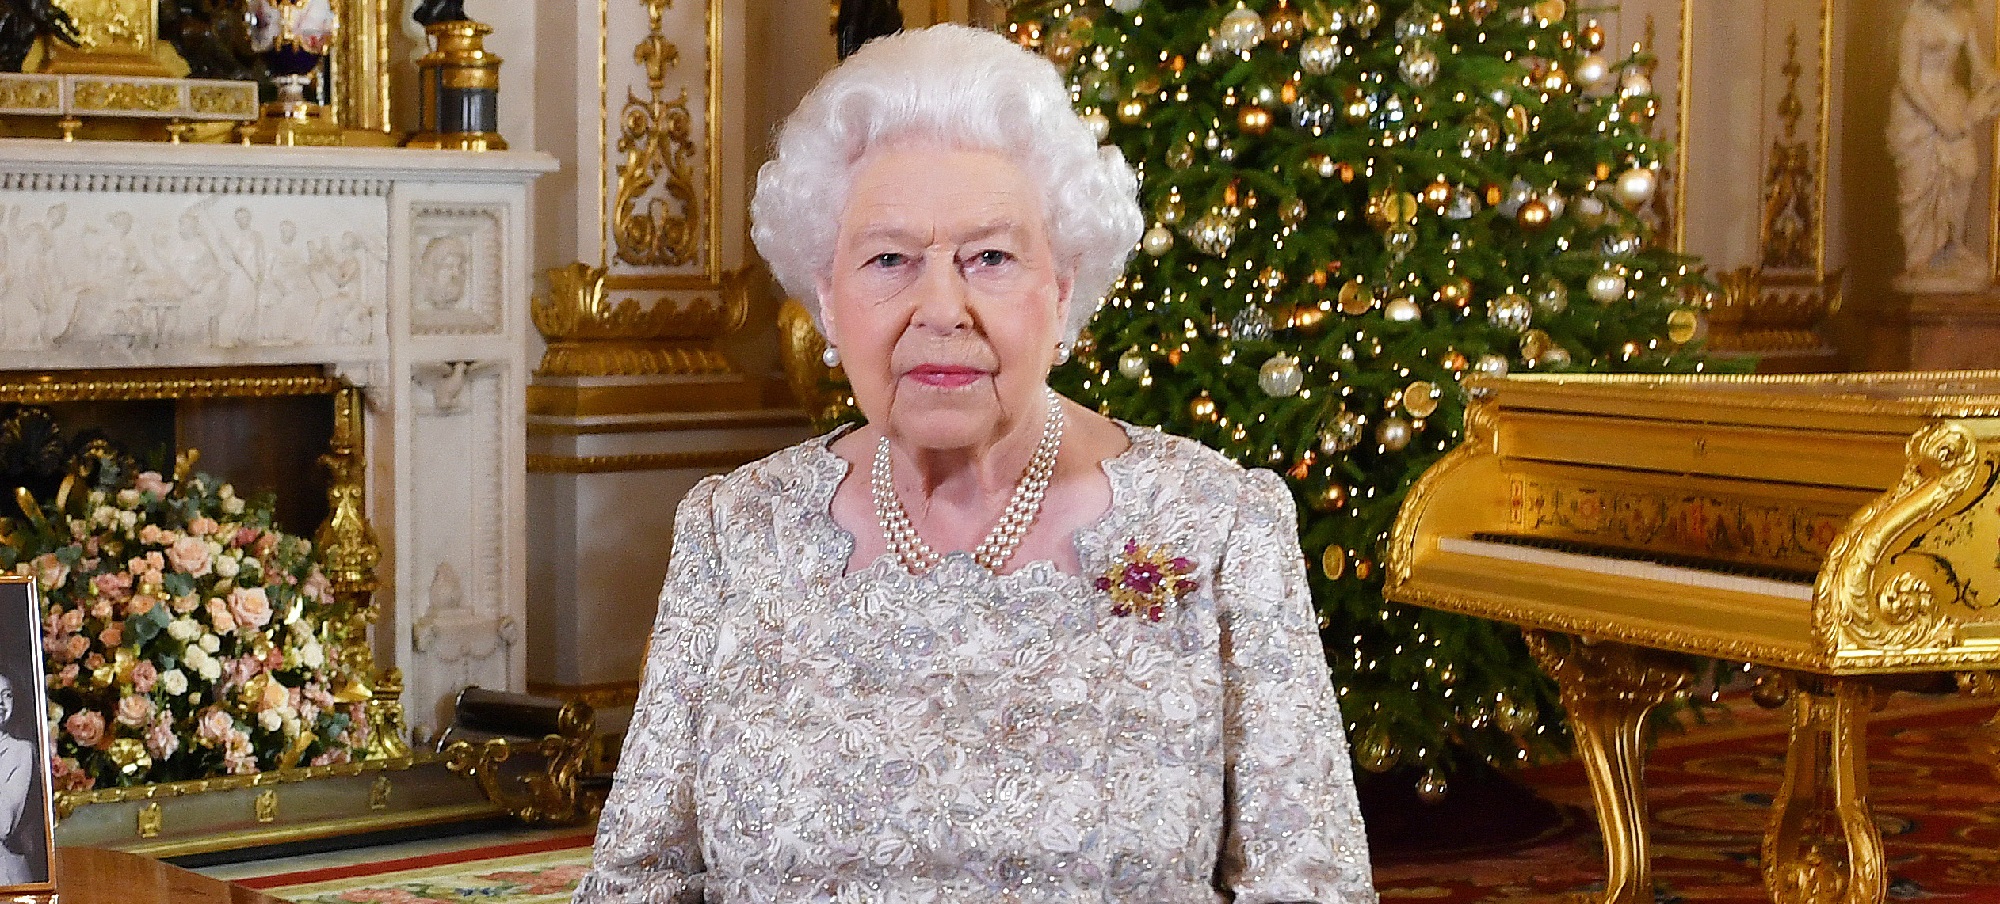 ¿Desaire al príncipe Harry y Meghan? El detalle en foto navideña de reina Isabel que genera polémica